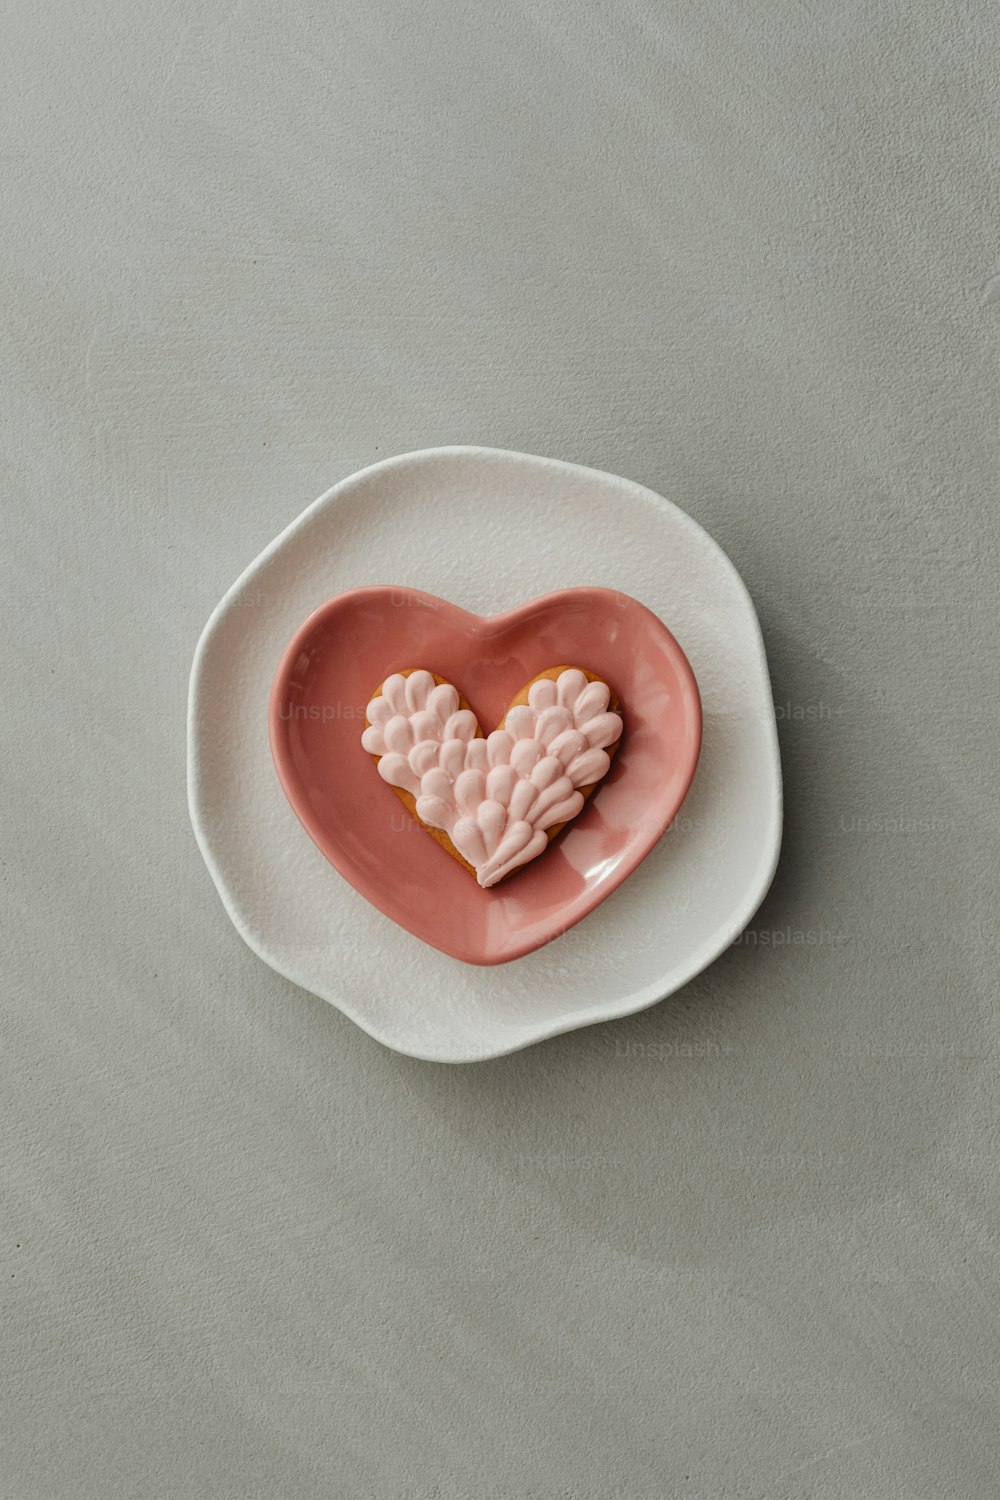 um biscoito em forma de coração sentado em cima de um prato branco